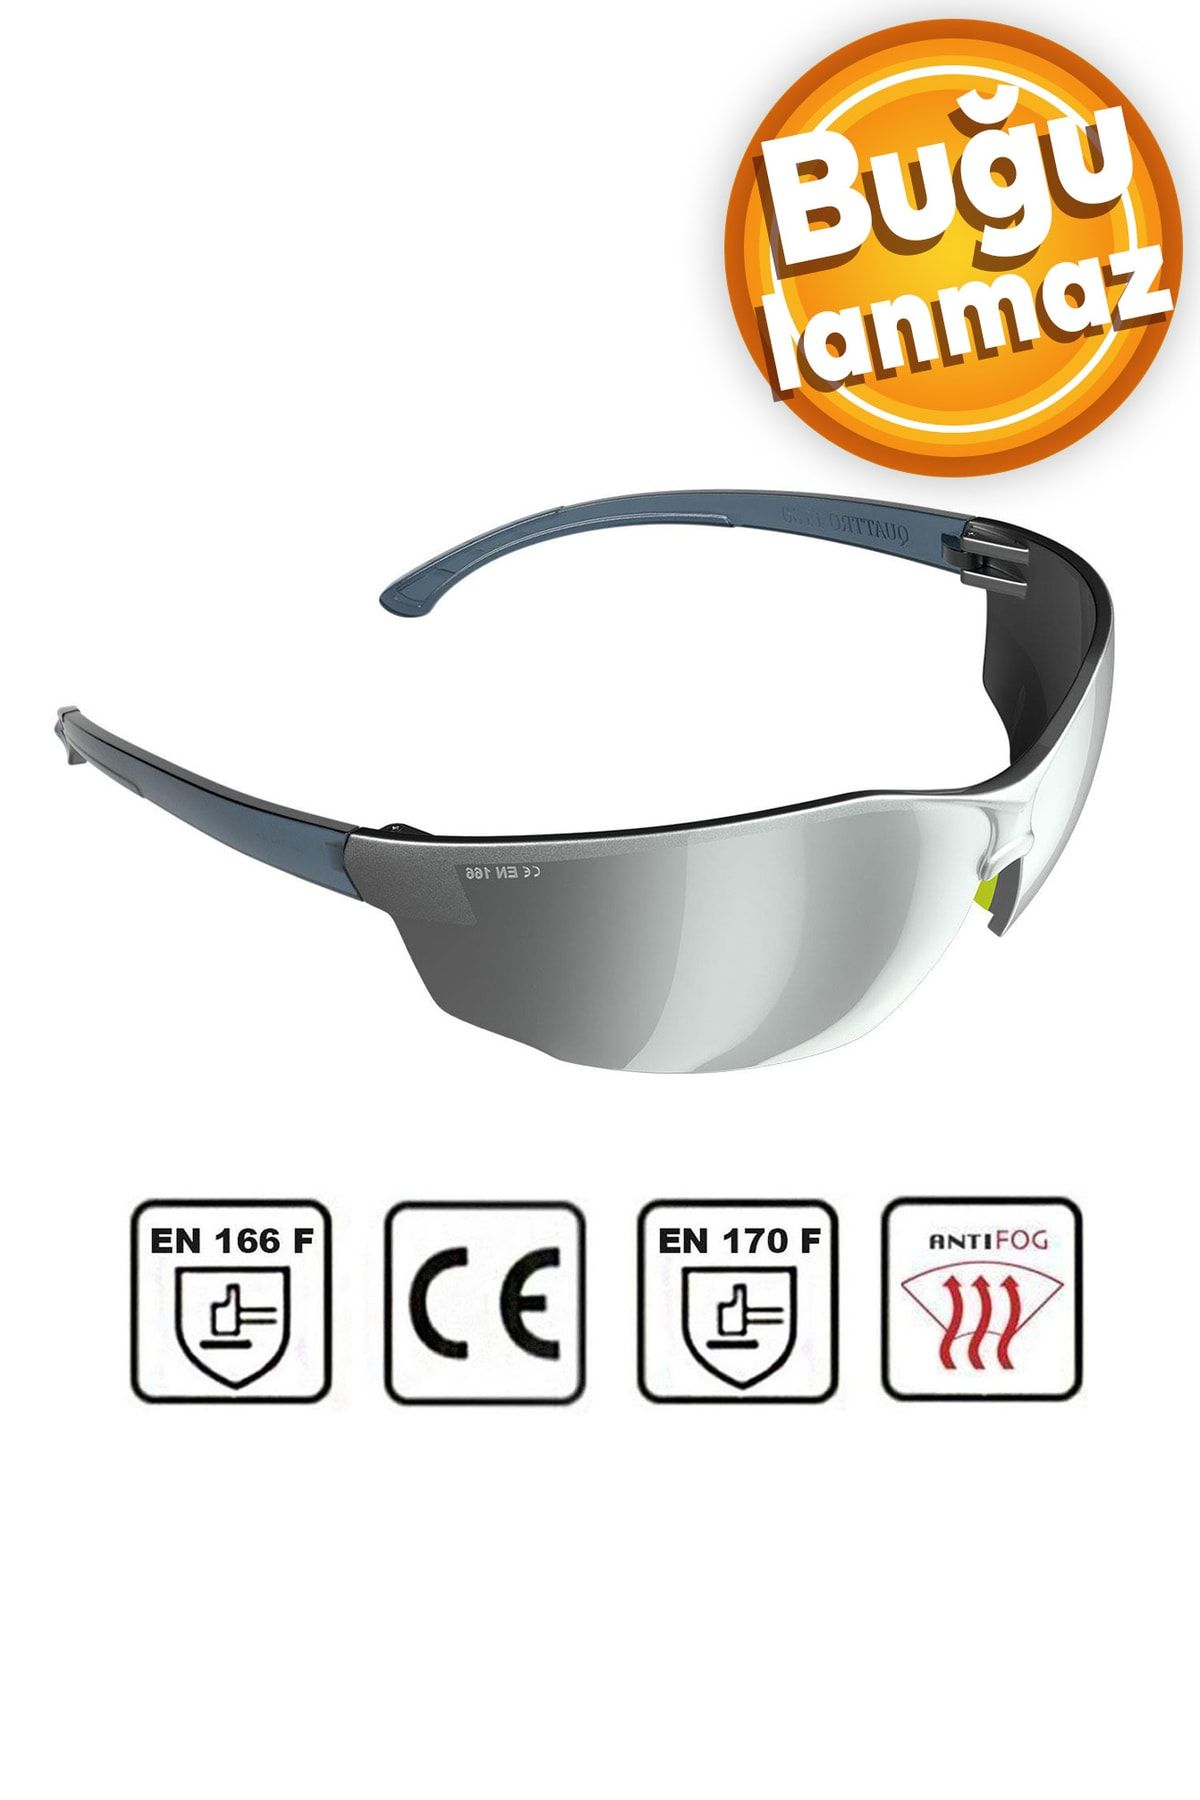 Badem10 Iş Güvenlik Güvenliği Gözlüğü Uv Koruyucu Silikonlu Antifog Buğulanmaz Gözlük S1100 Gümüş Ürünleri